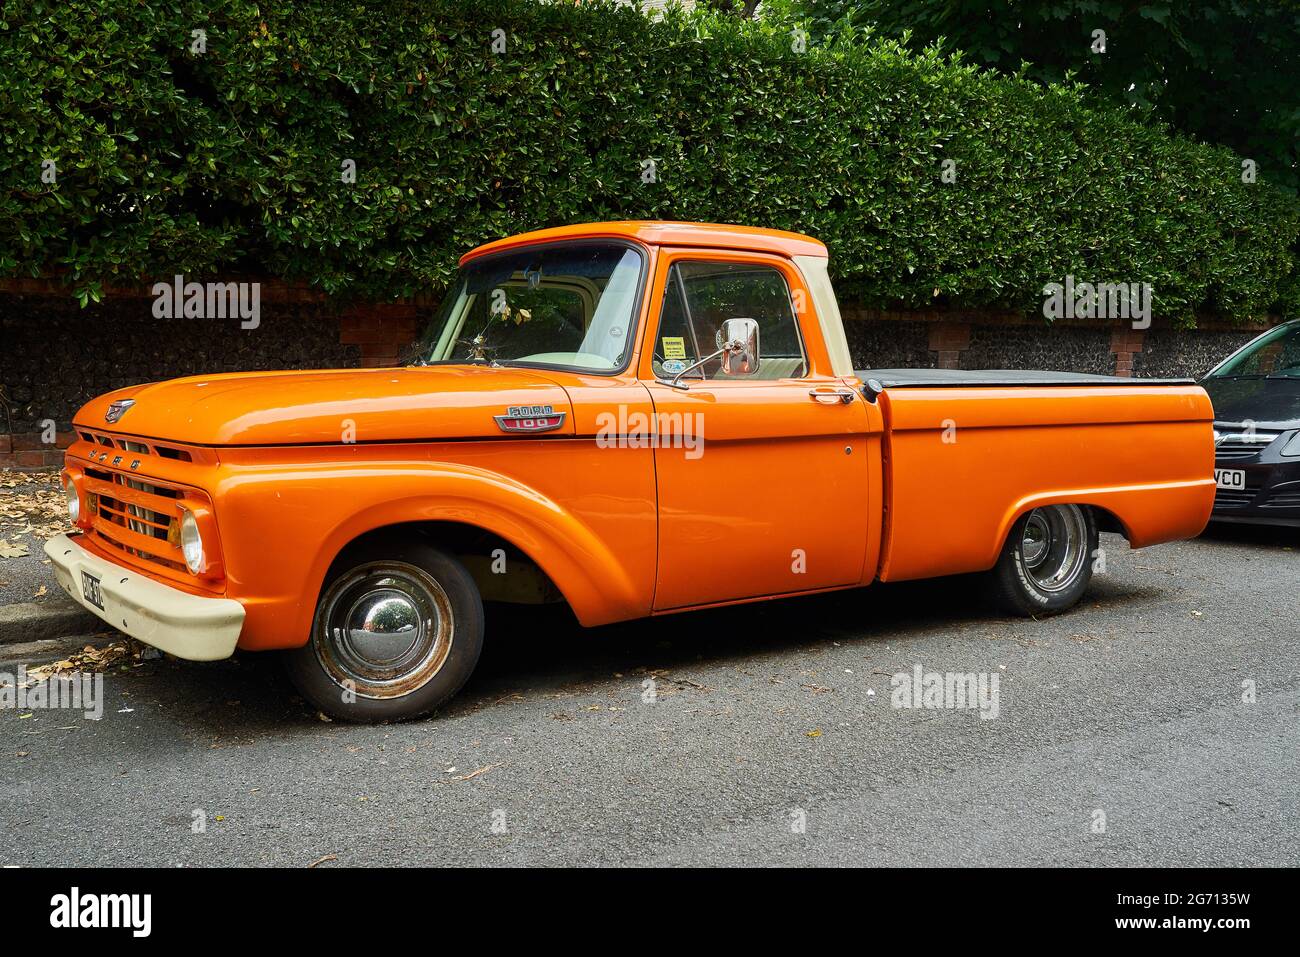 Ramsgate, United Kingdom - June 29, 2021: A mid sixties orange Ford F100 Pickup Truck Stock Photo